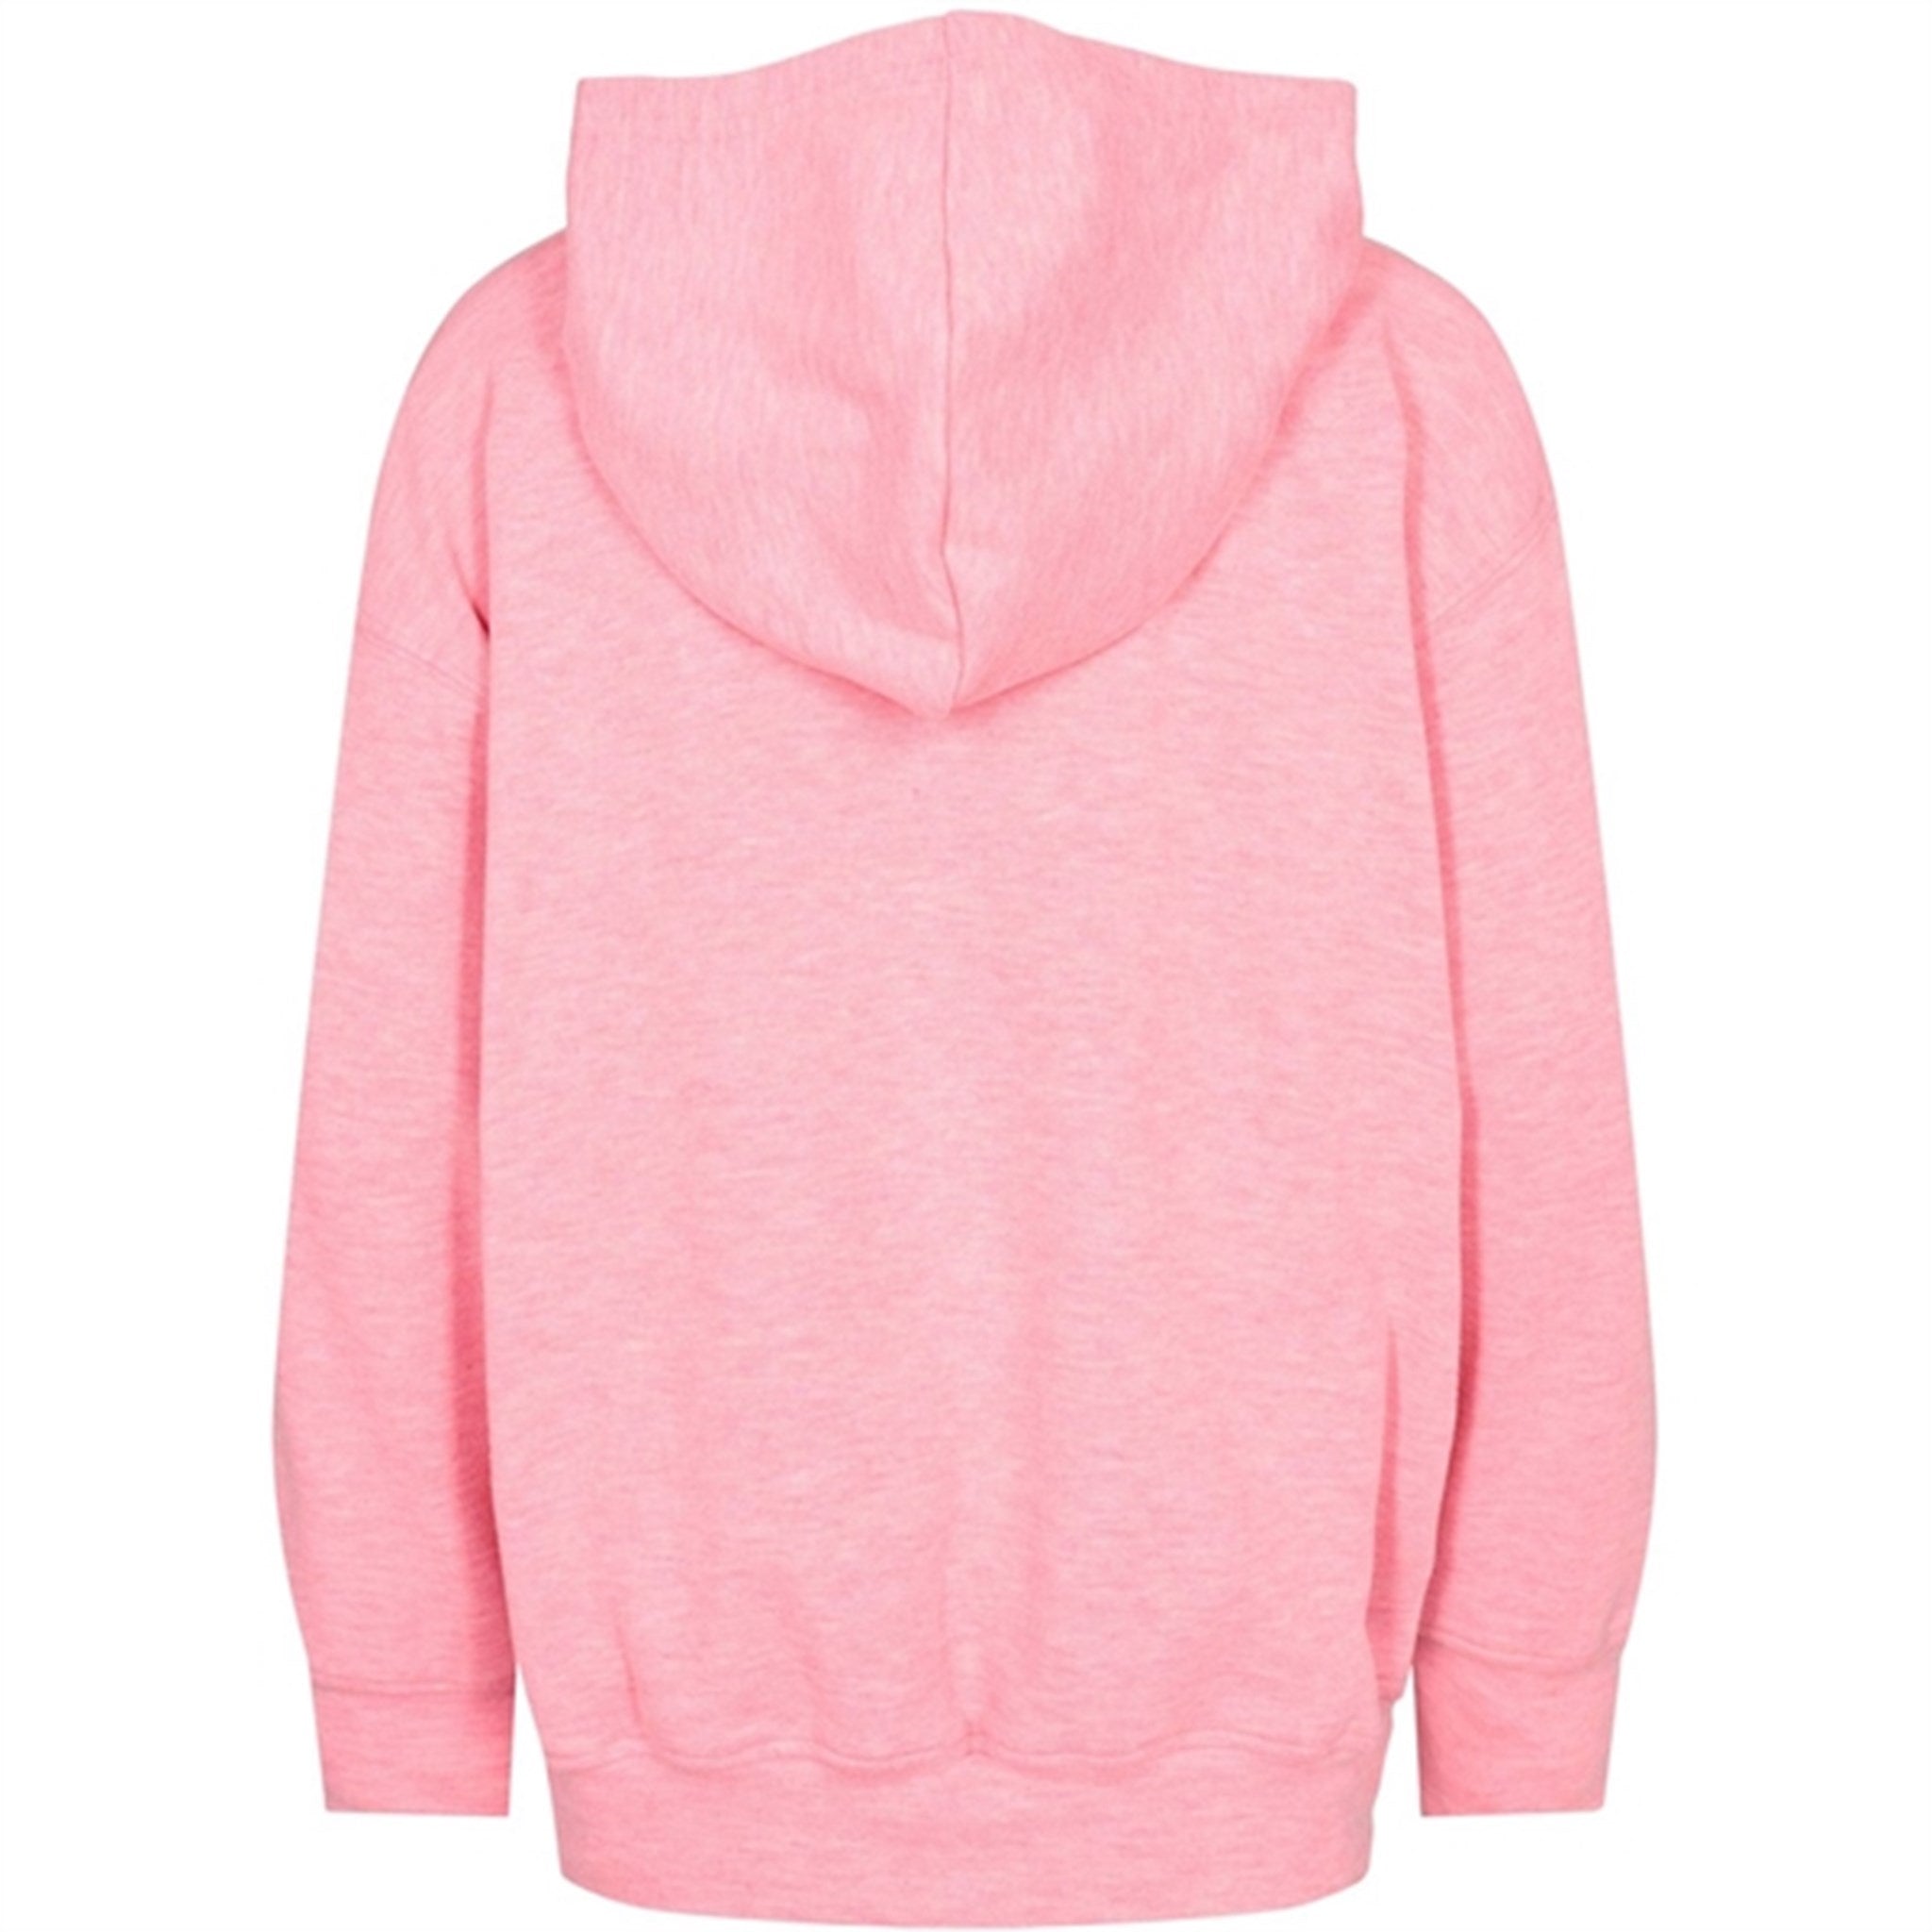 Sofie Schnoor Light Pink Sweatshirt 3